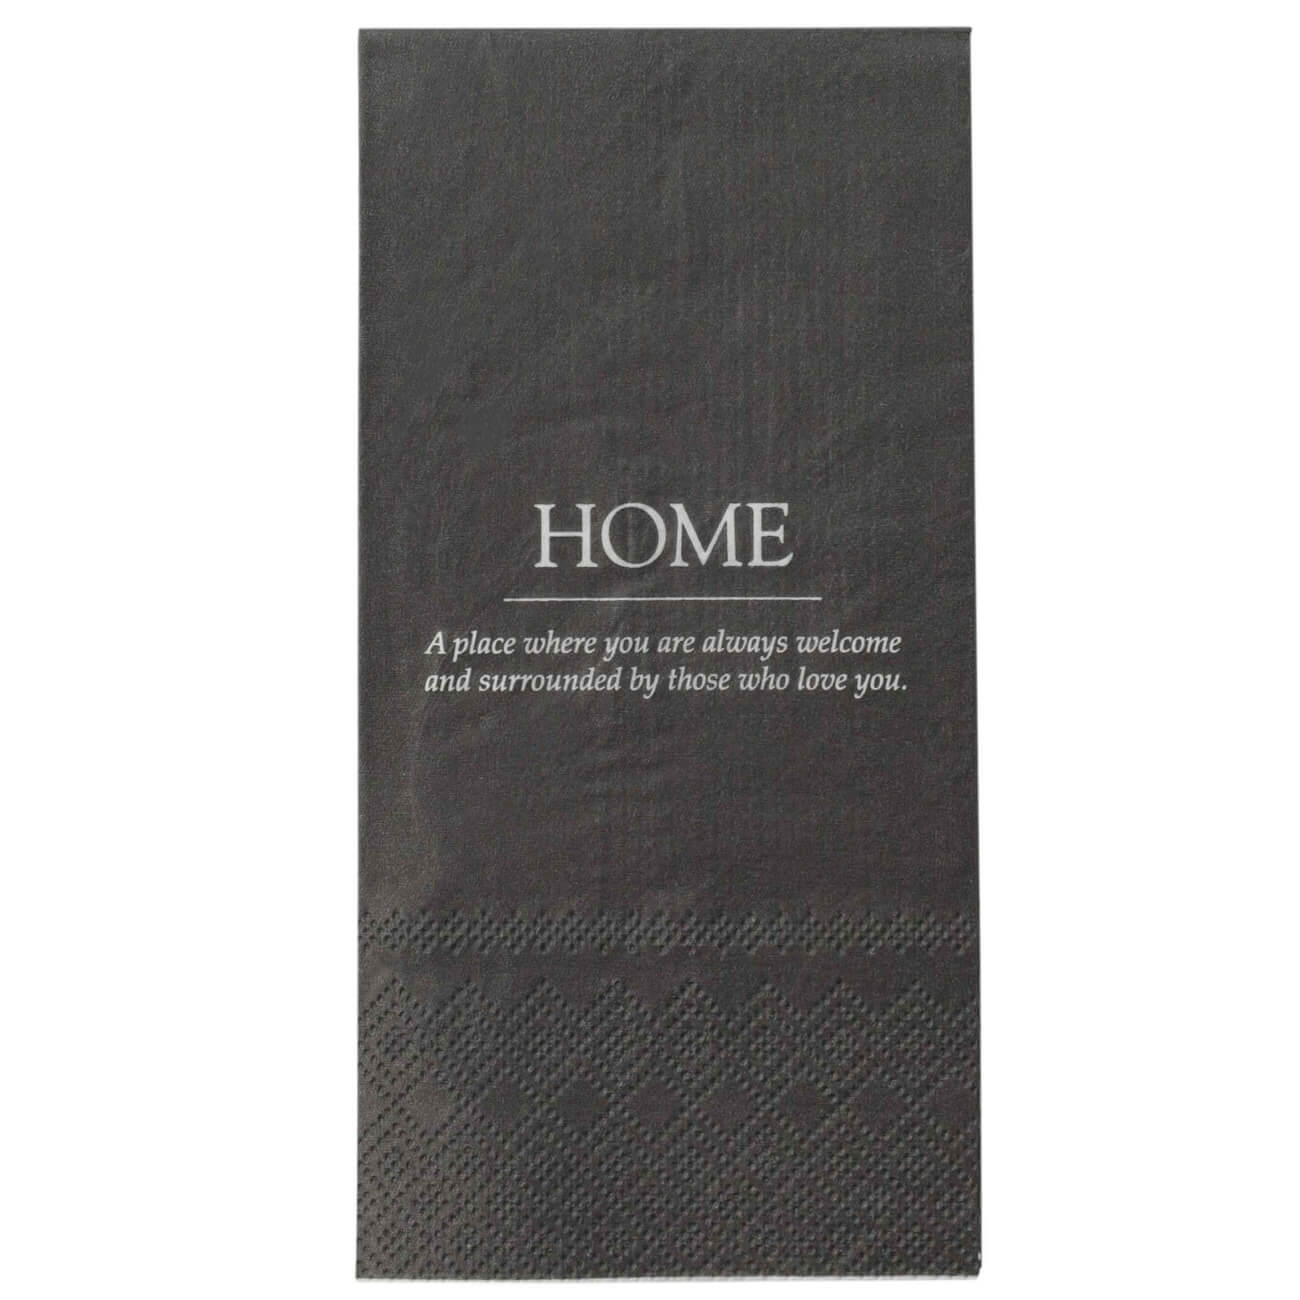 Салфетки бумажные, 33х33 см, 20 шт, прямоугольные, черные, Home, Course однослойные бумажные салфетки luscan